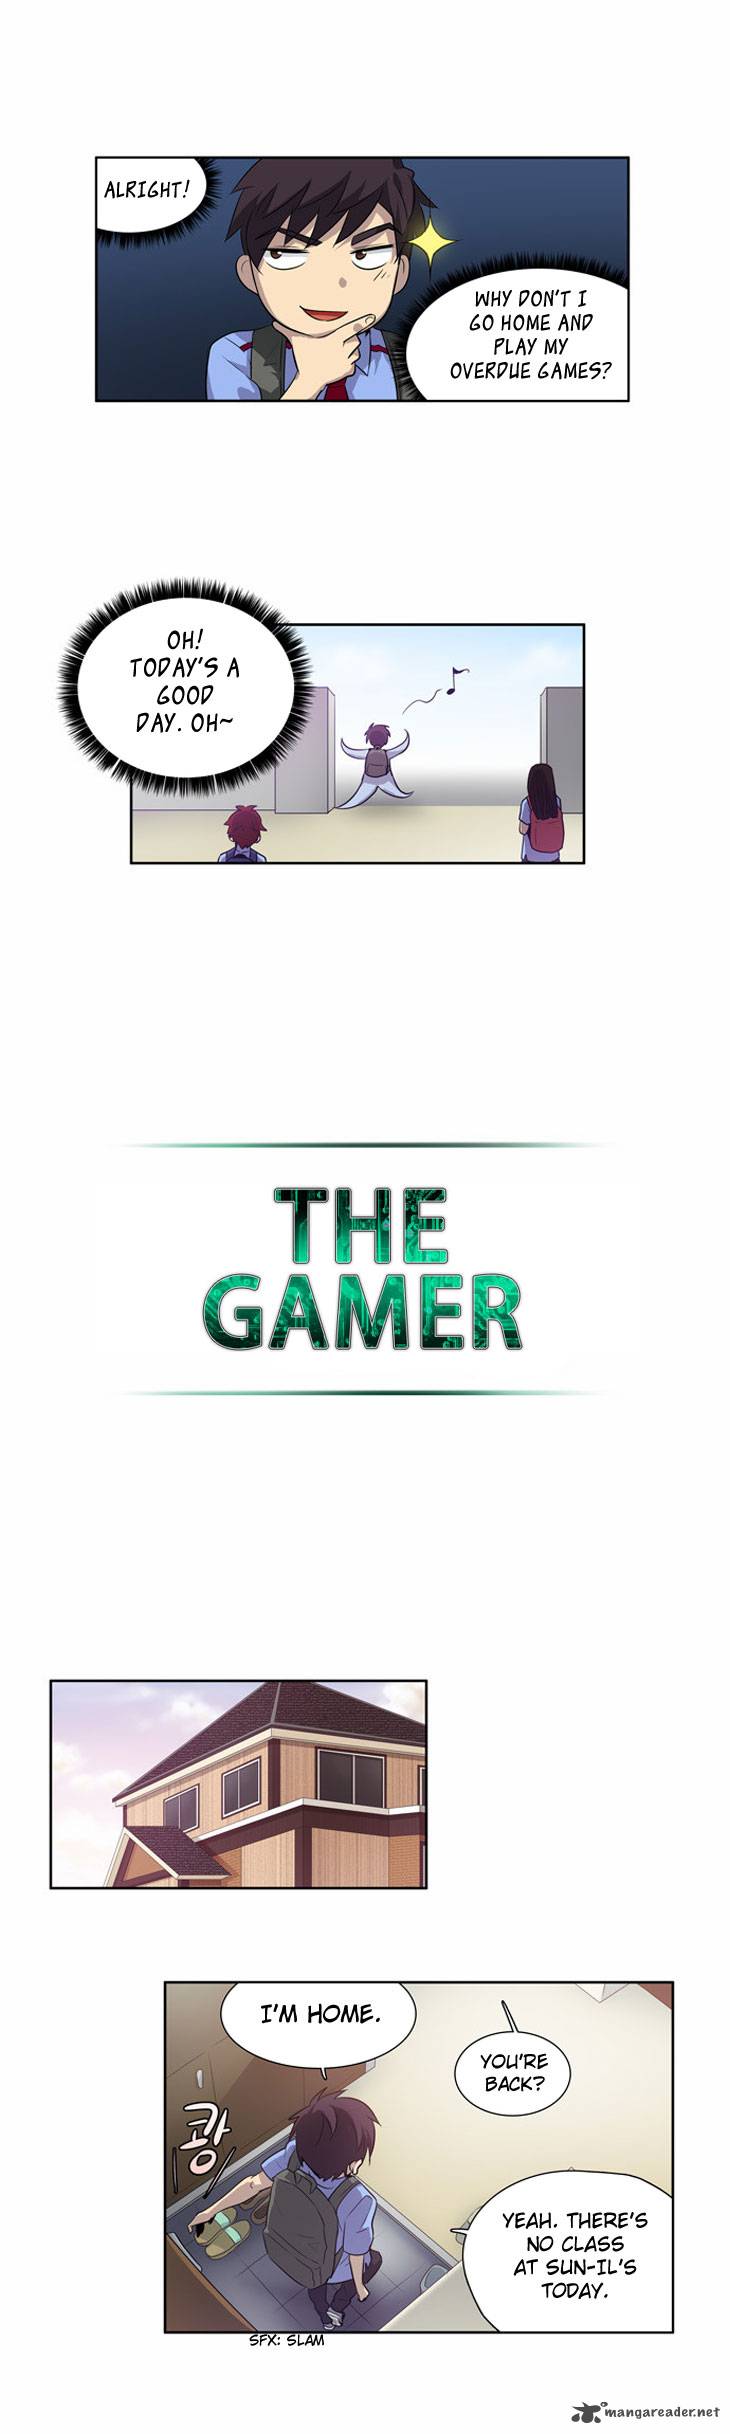 The Gamer 21 13